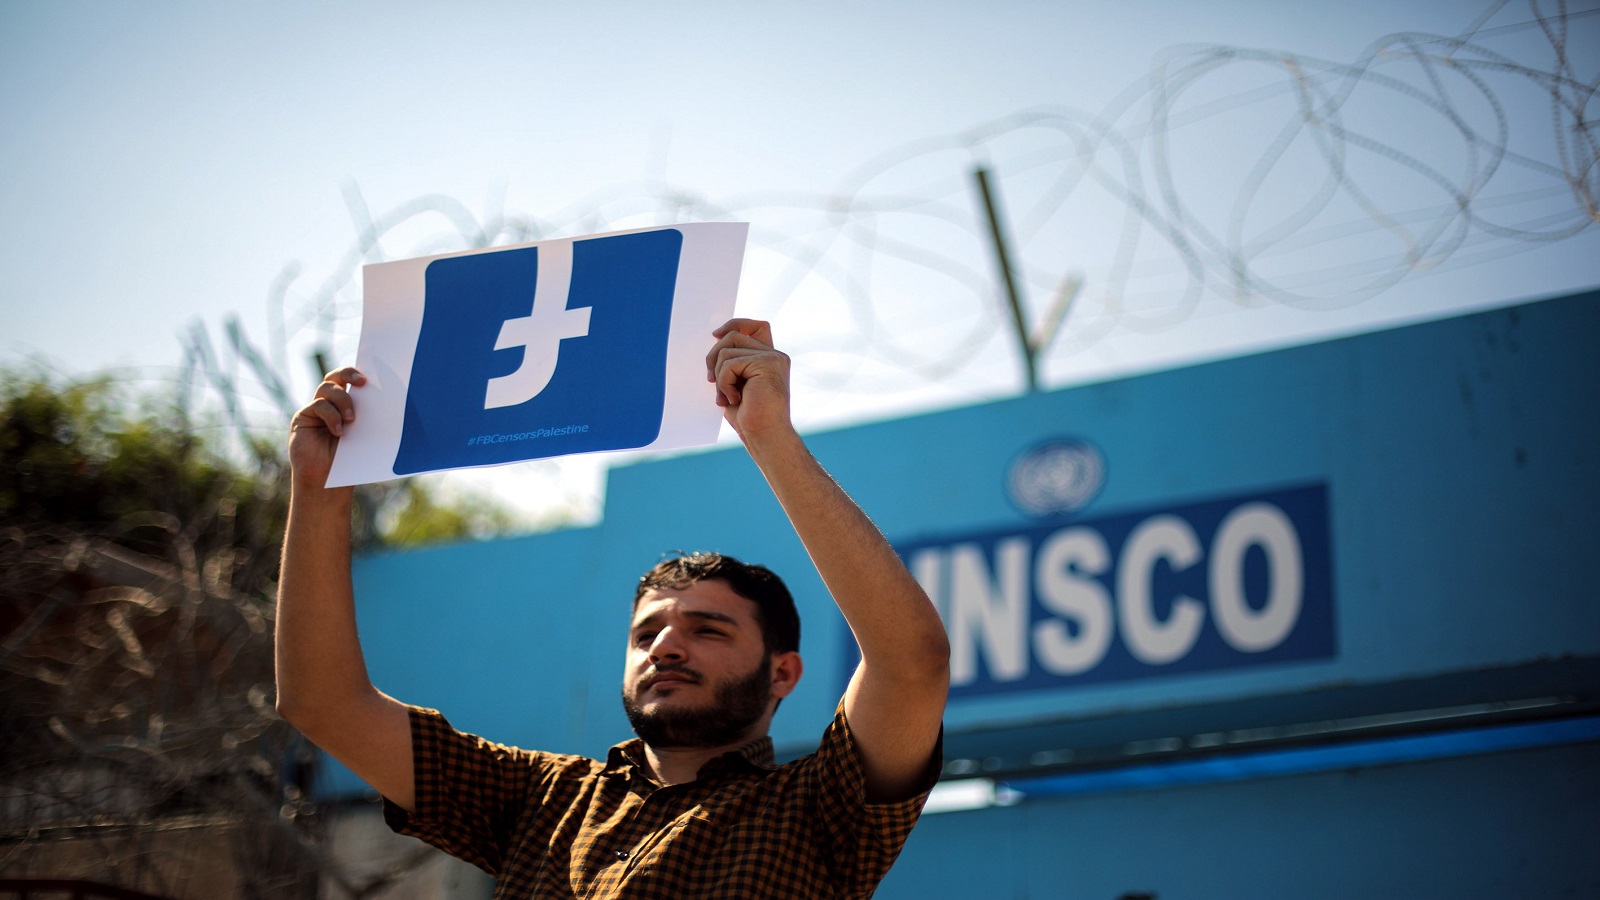 "فايسبوك" ينحني لإرادة المستبدين العرب